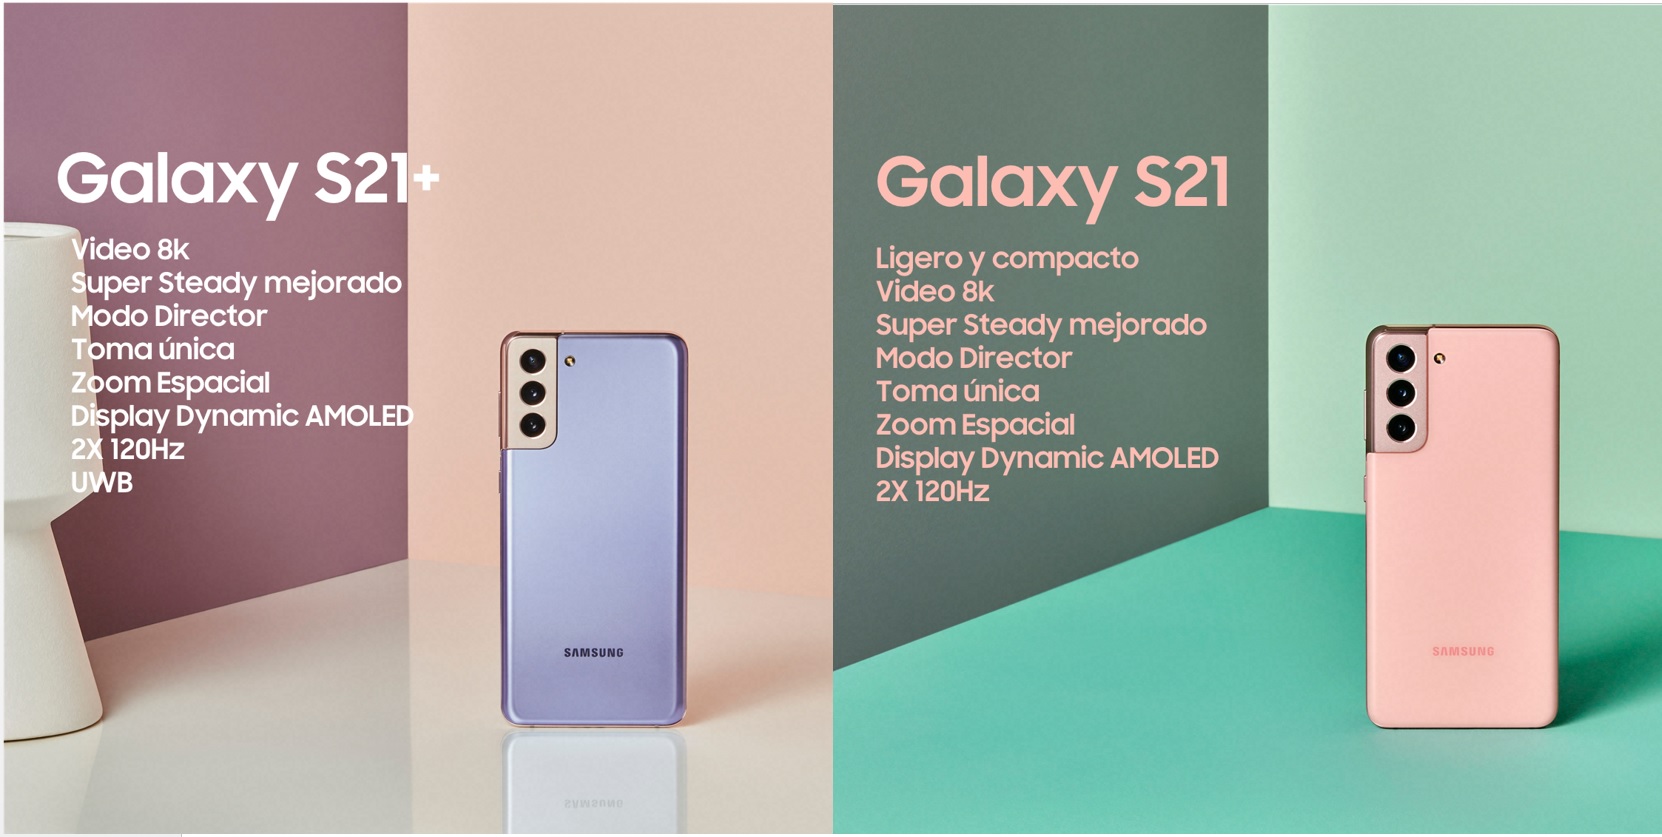 Samsung Electronics presentó el Galaxy S21 y el Galaxy S21+, los últimos dispositivos insignia que le empoderan a expresarse tal como es.